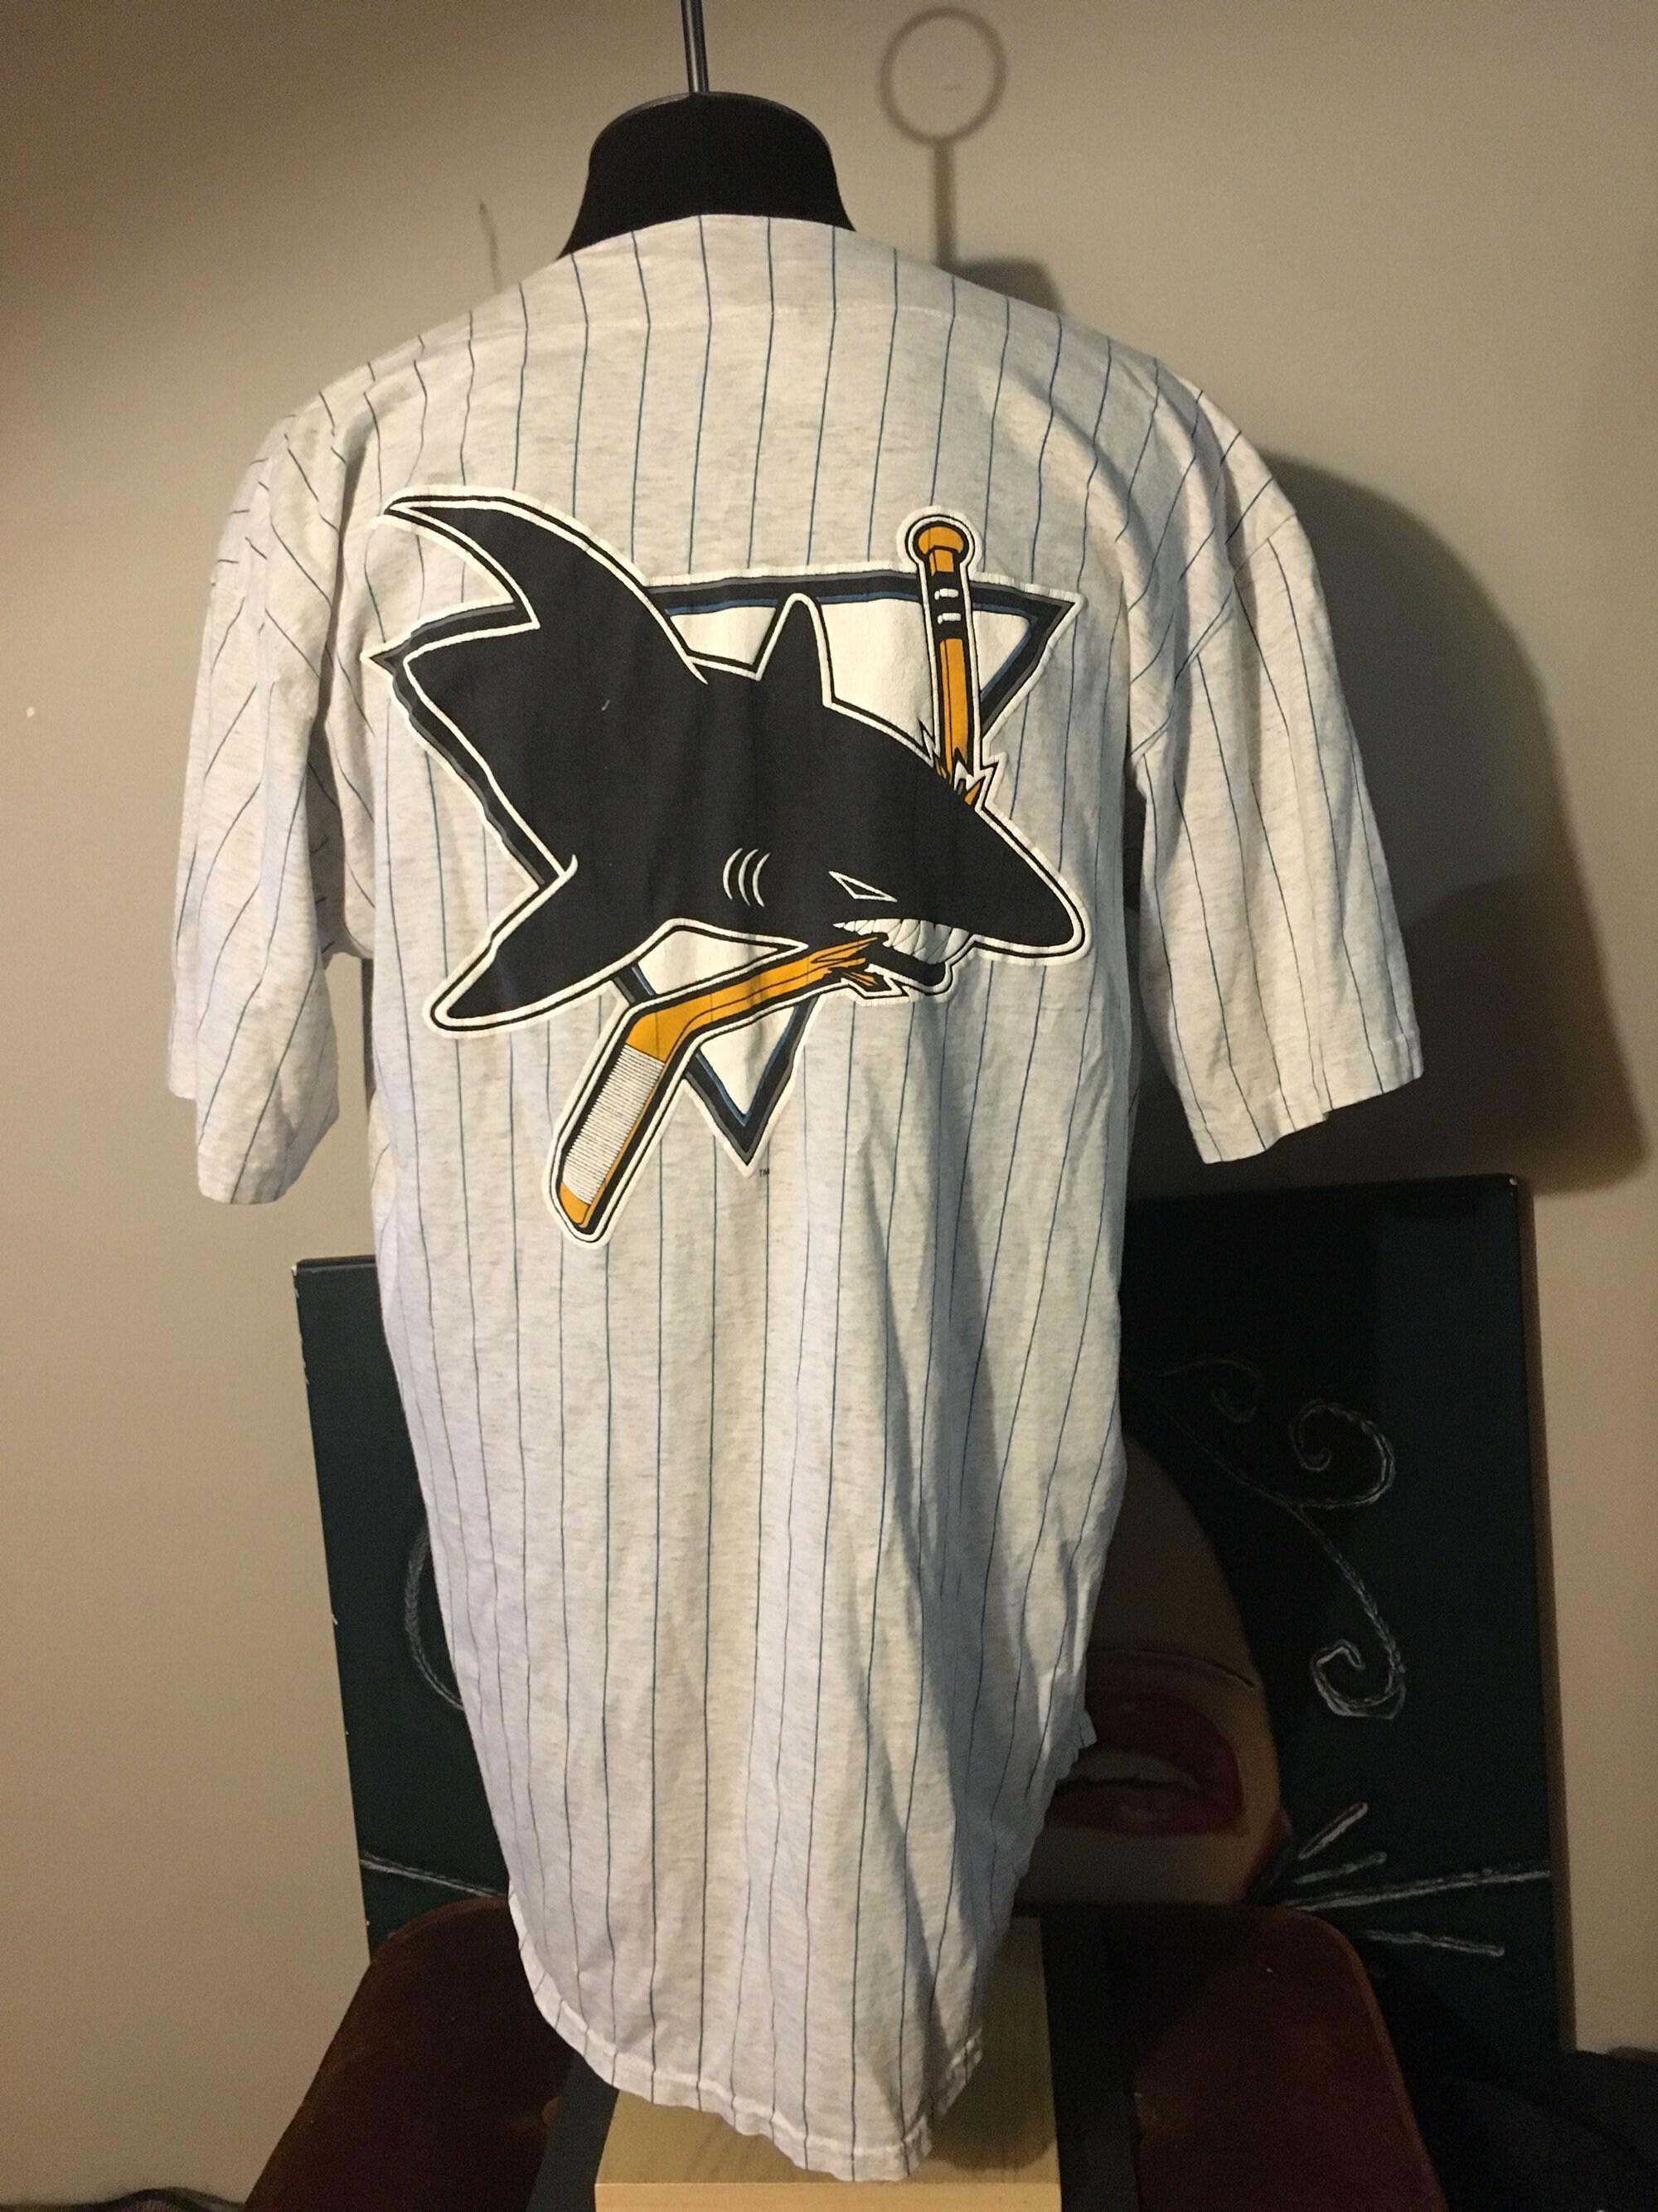 San jose sharks baseball jersey shirt